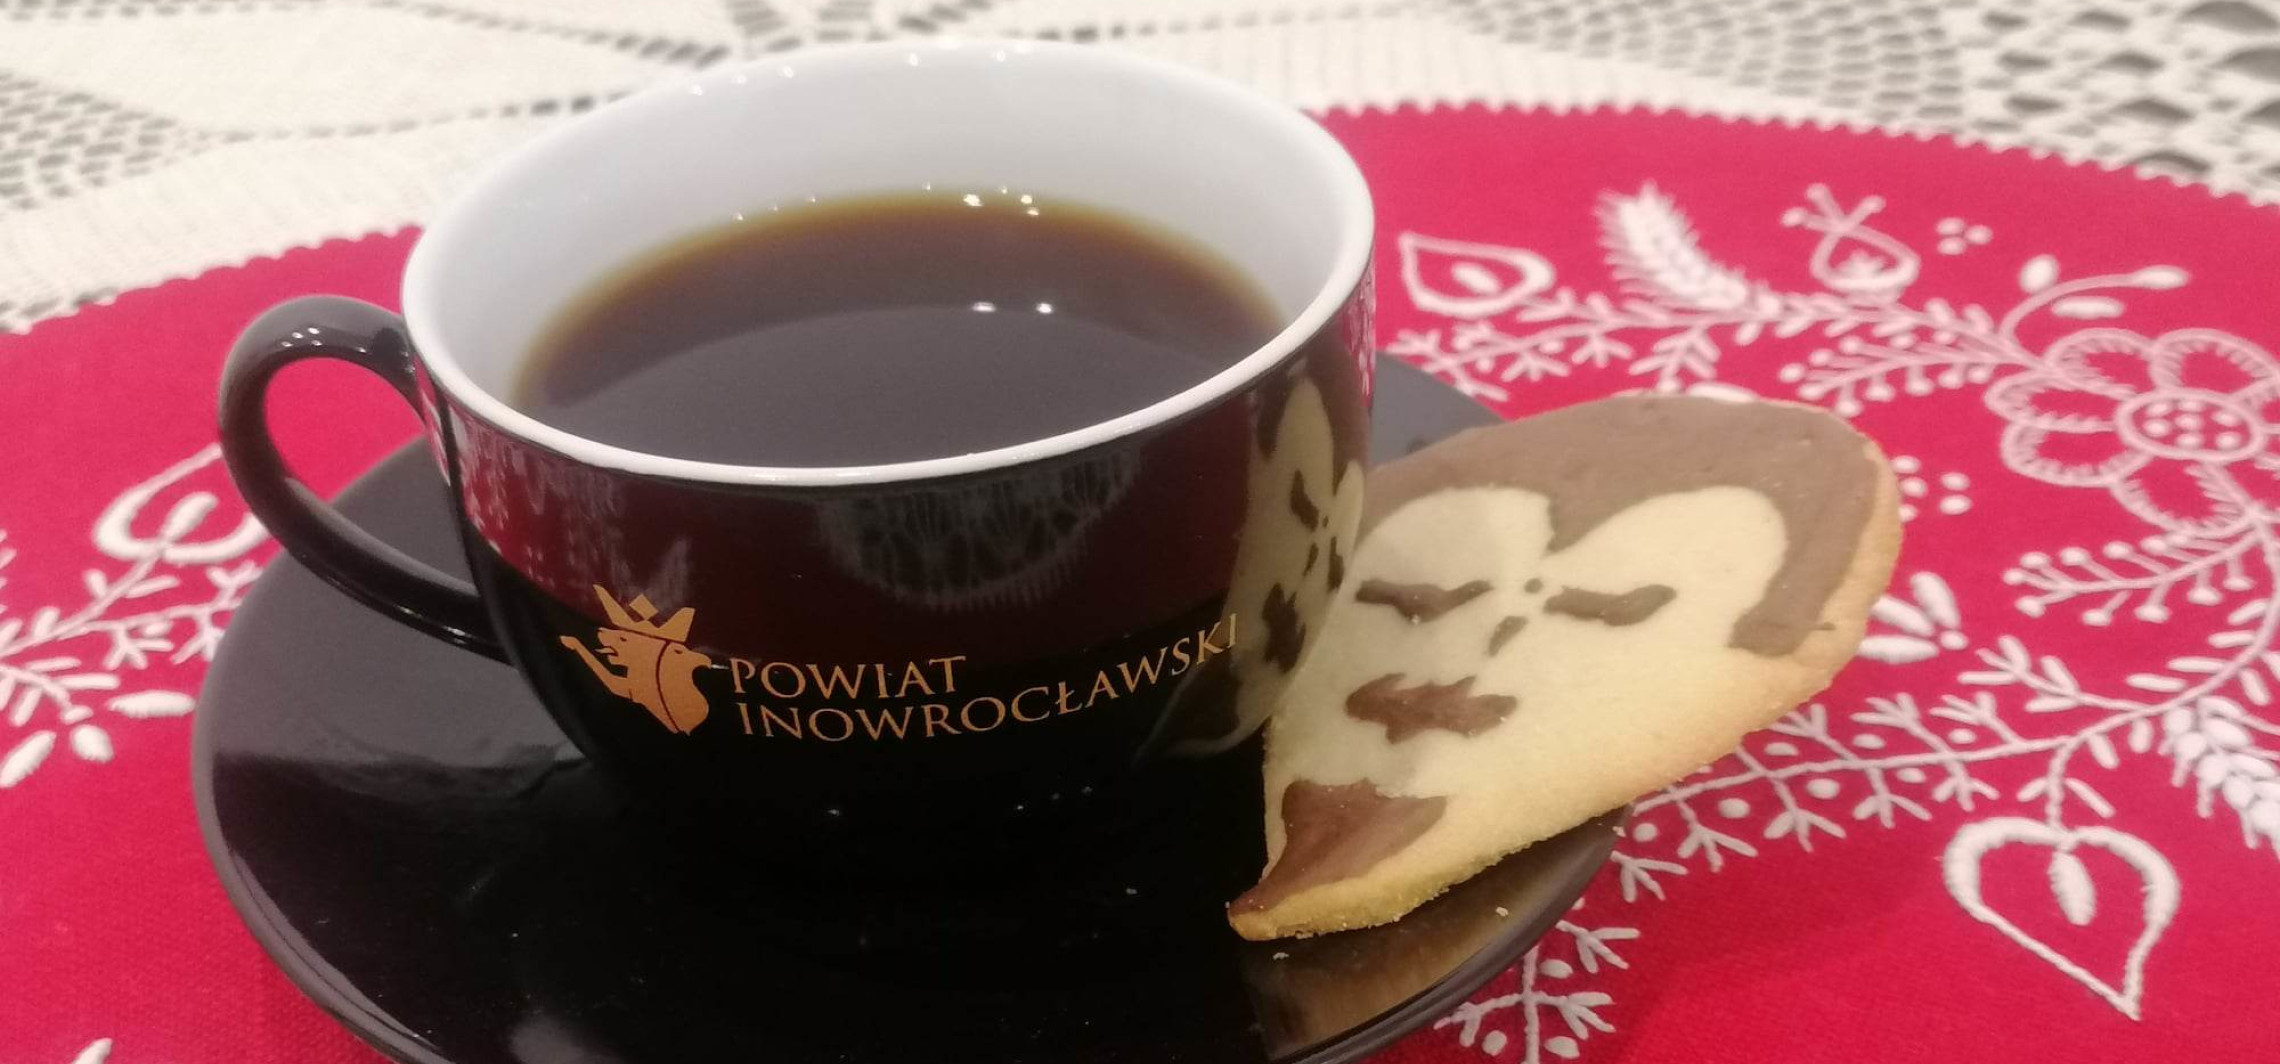 Inowrocław - Urodzinowa kawa i "jaśkowe” ciastko u Kasprowicza